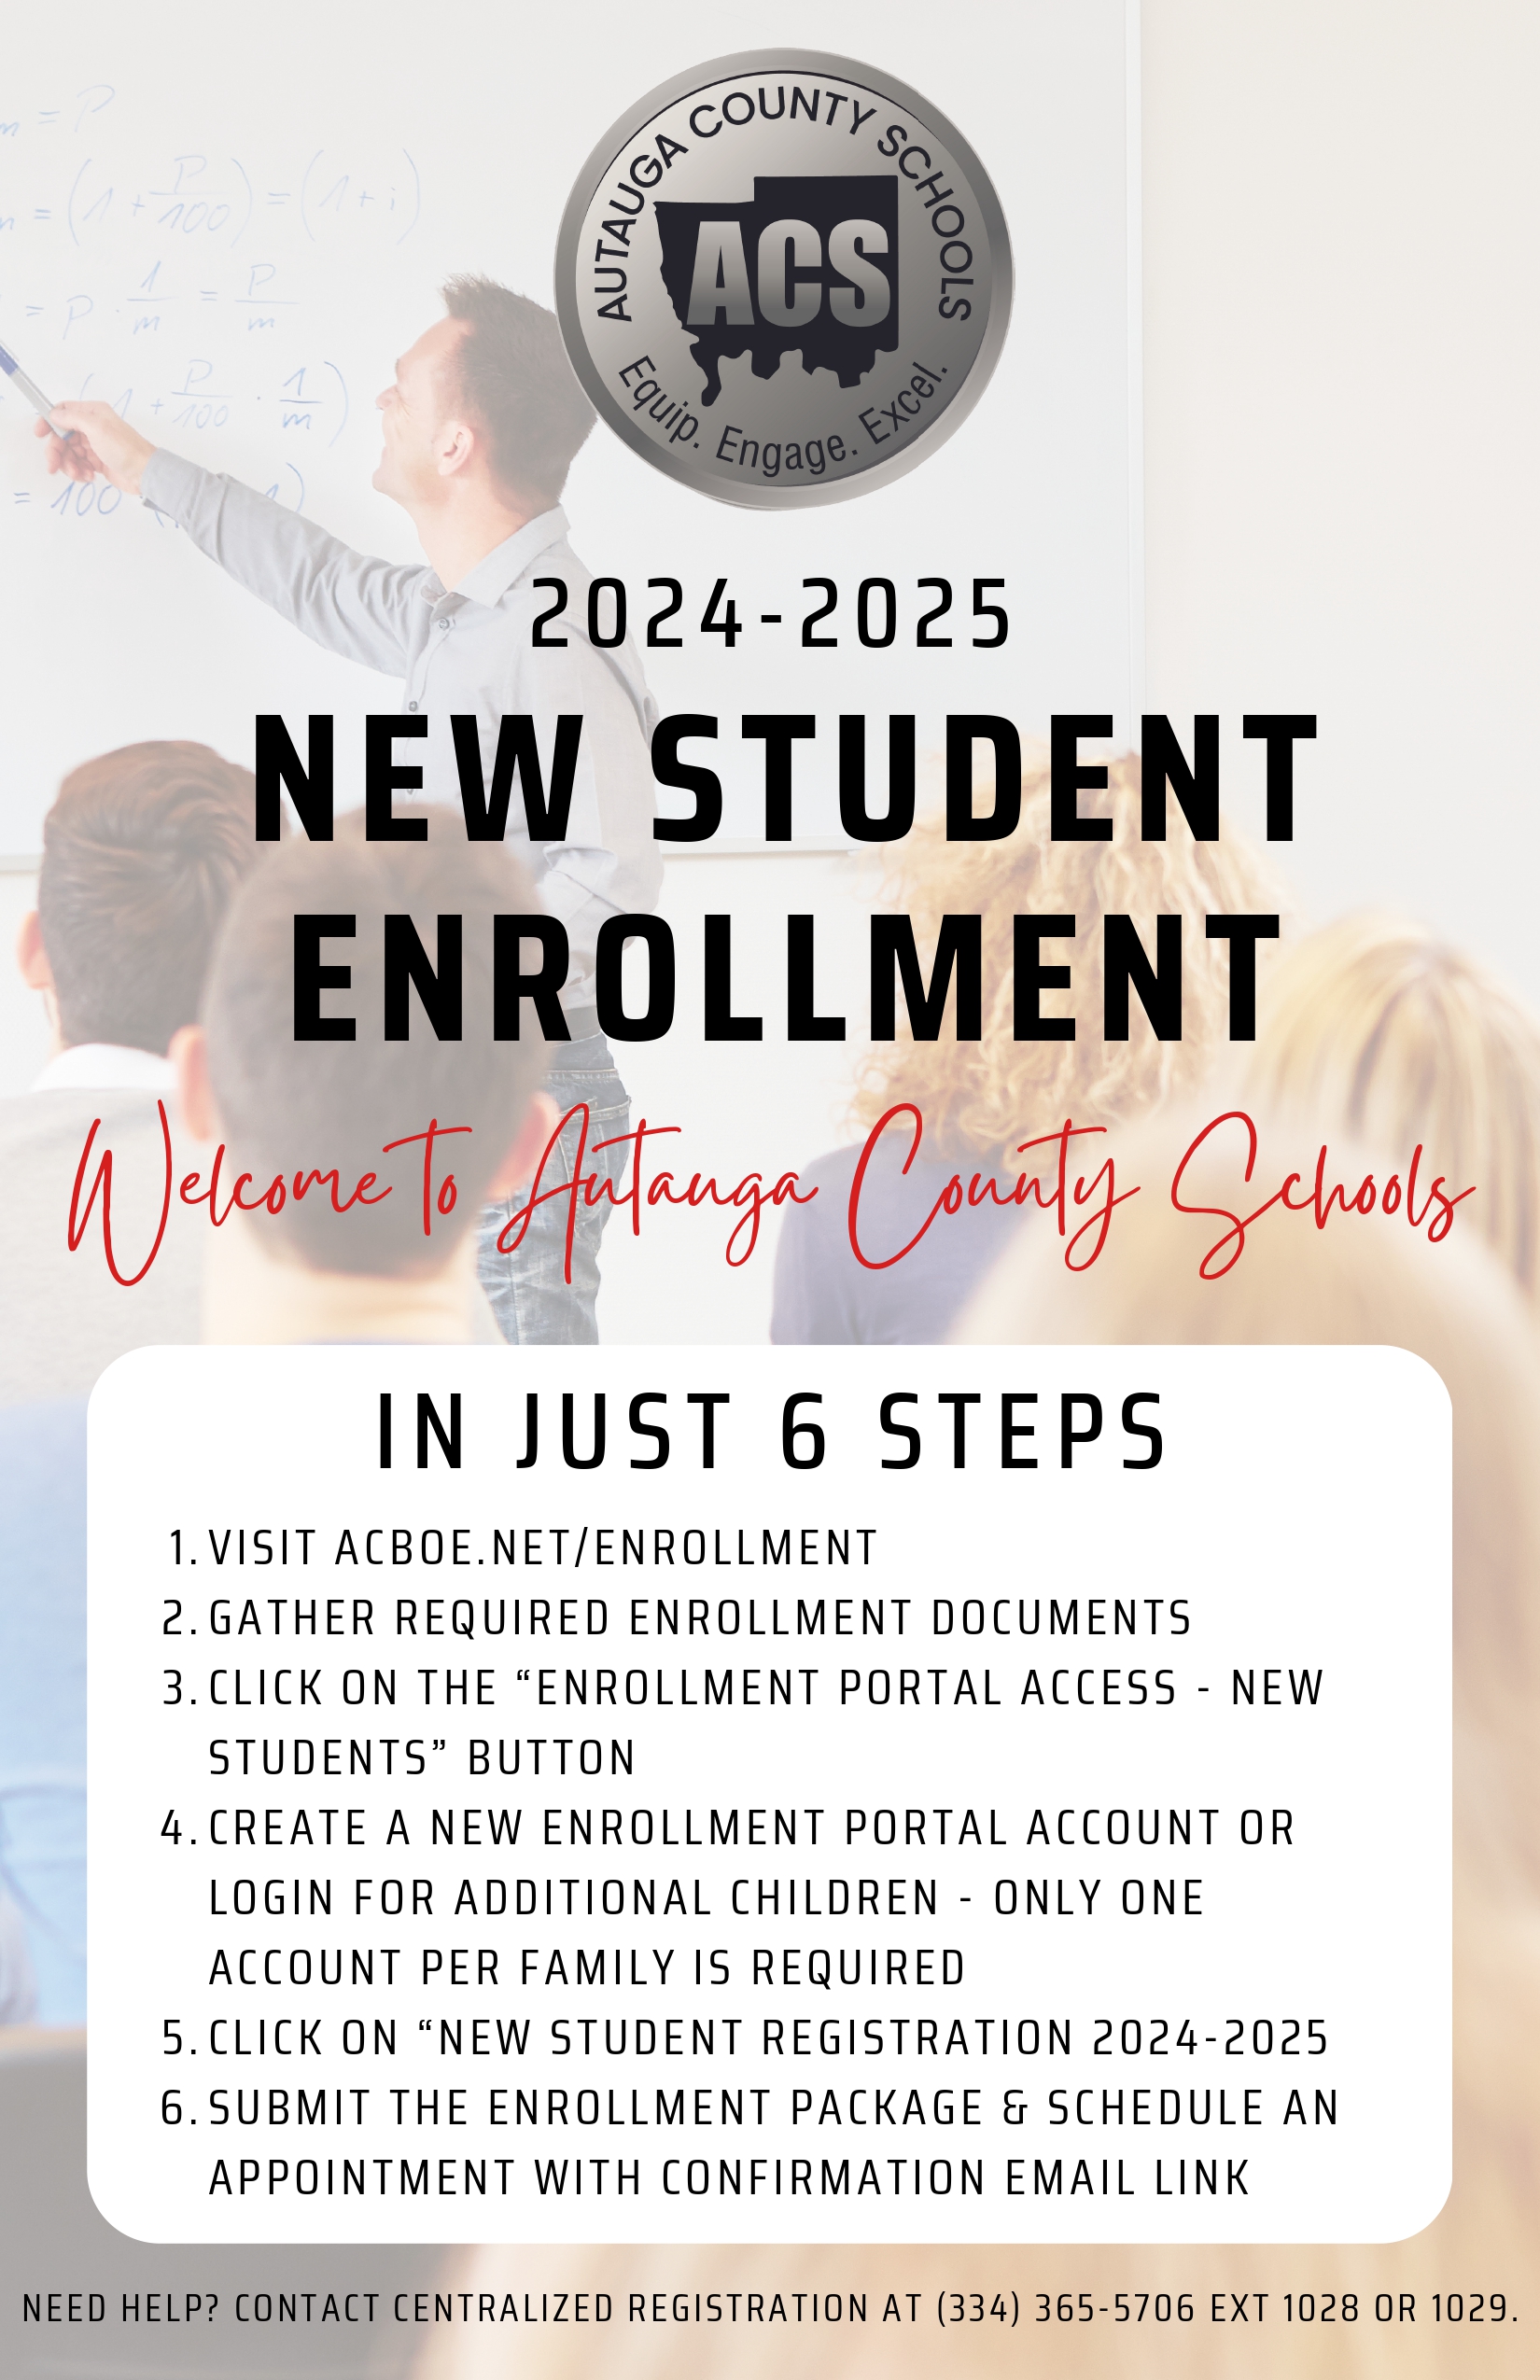 Online enrollment